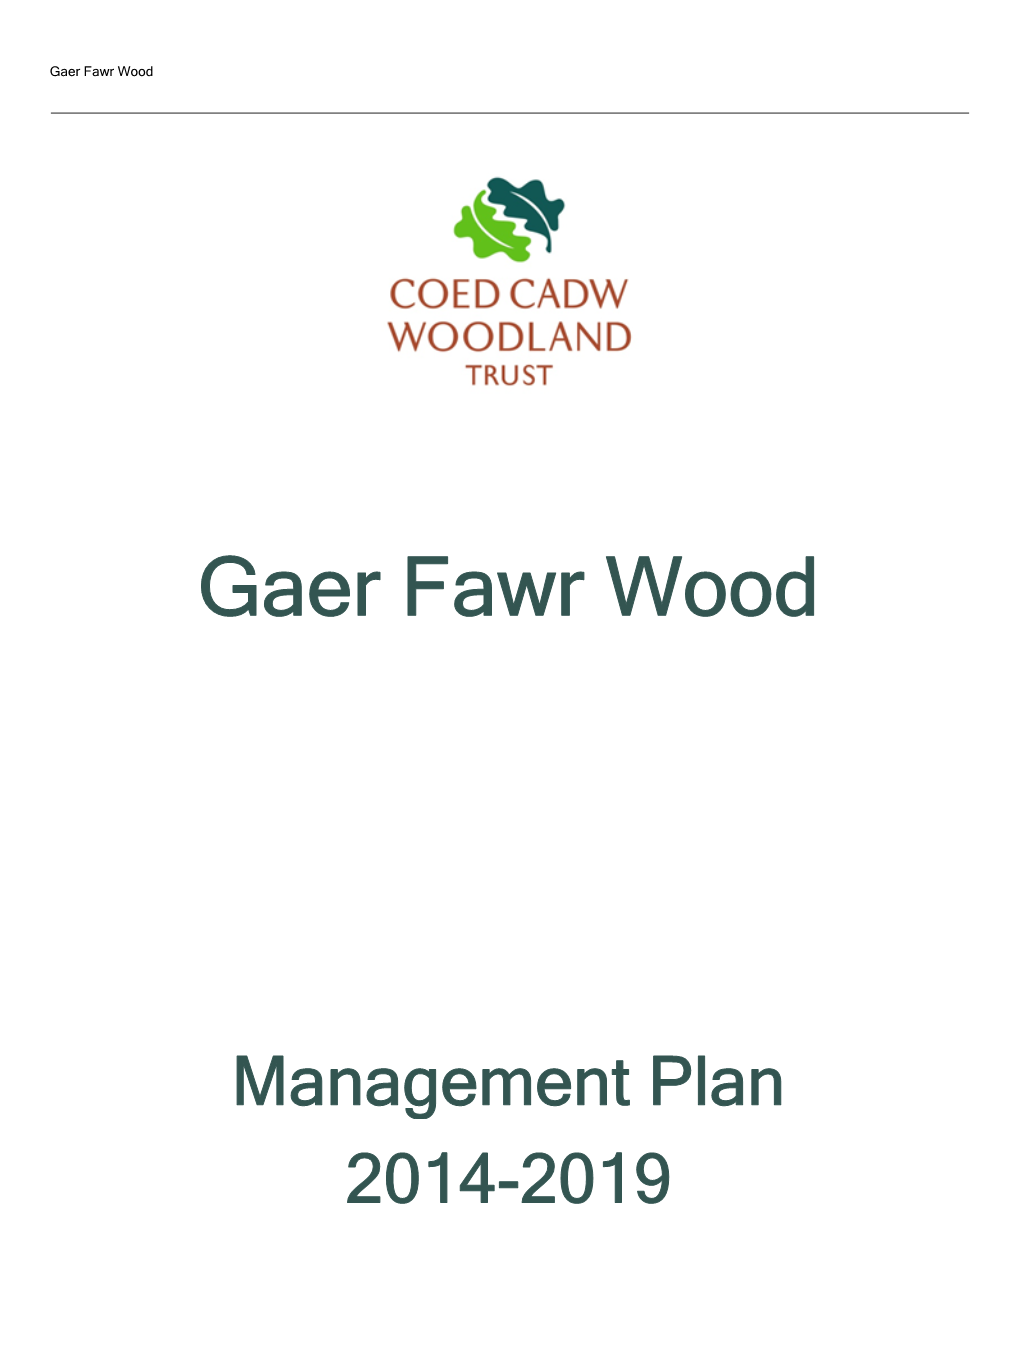 Download Gaer Fawr Wood Management